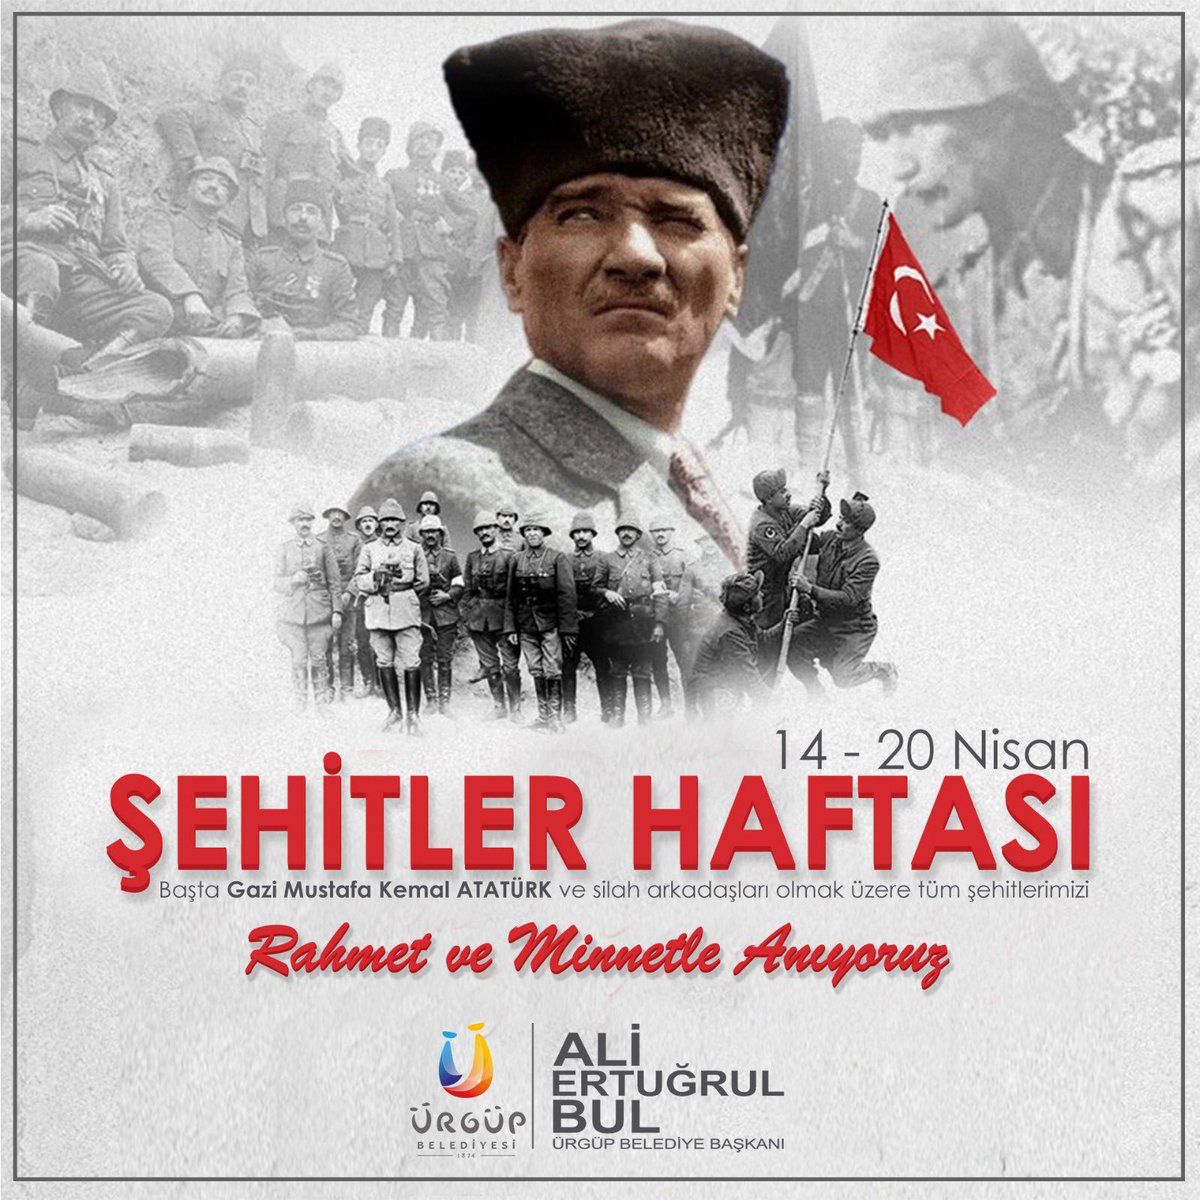 Şehitler Haftası'nda başta Gazi Mustafa Kemal ATATÜRK ve silah arkadaşları olmaz üzere tüm şehitlerimizi rahmet ve minnetle anıyoruz. 🇹🇷🇹🇷 🇹🇷